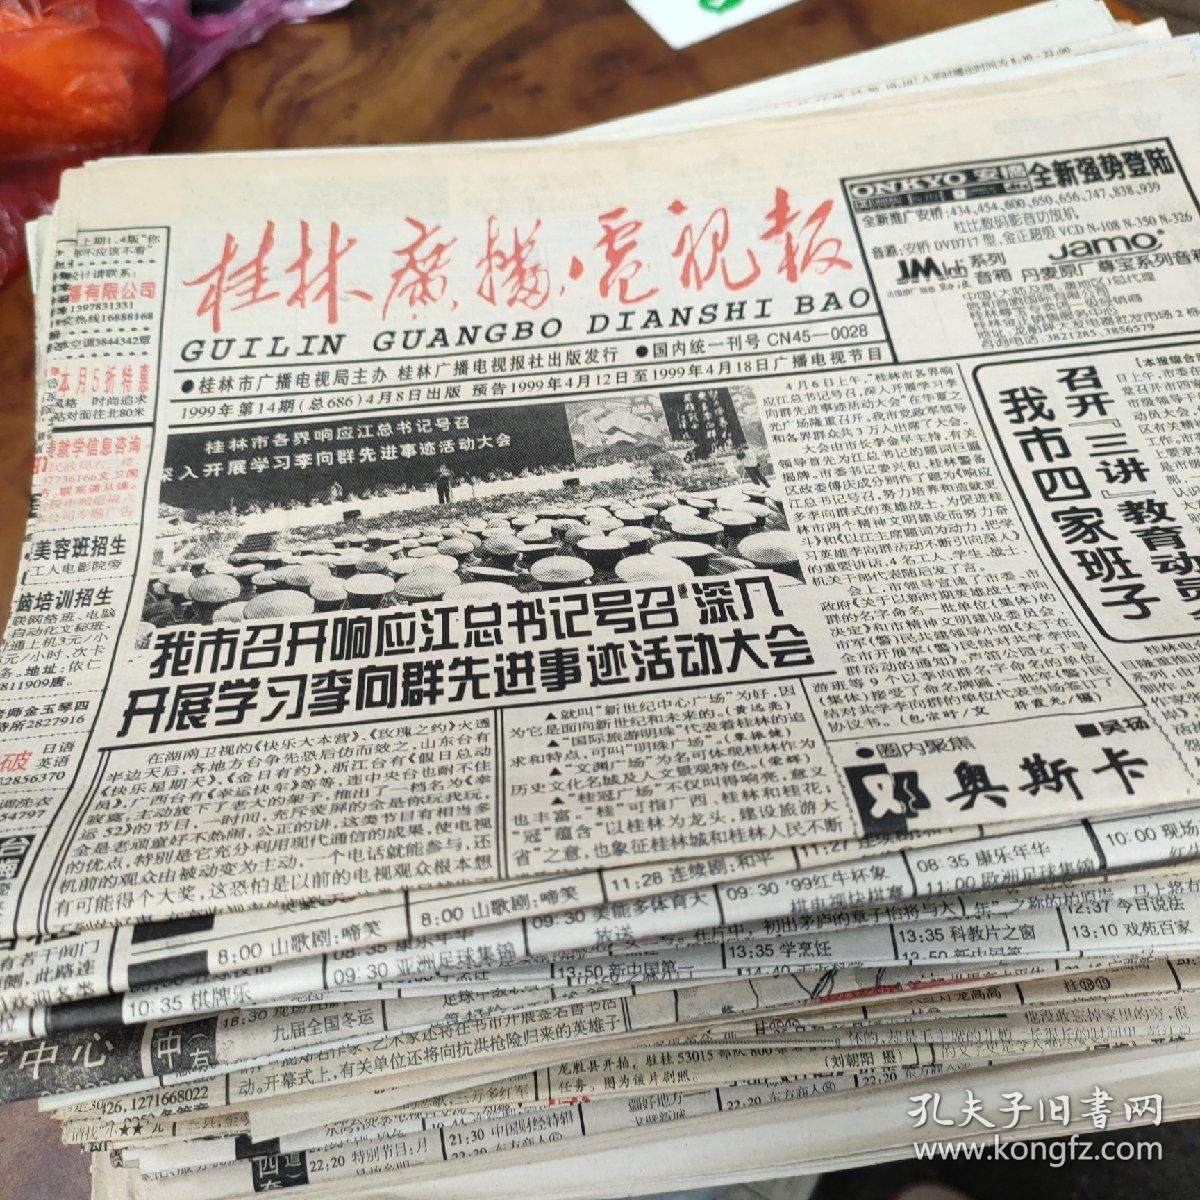 桂林广播电视报 1990年1份，1991年3份，92年3份，93年8份，94年11份，95年13份，96年10份，97年8份，98年21份，99年27份共105份合售